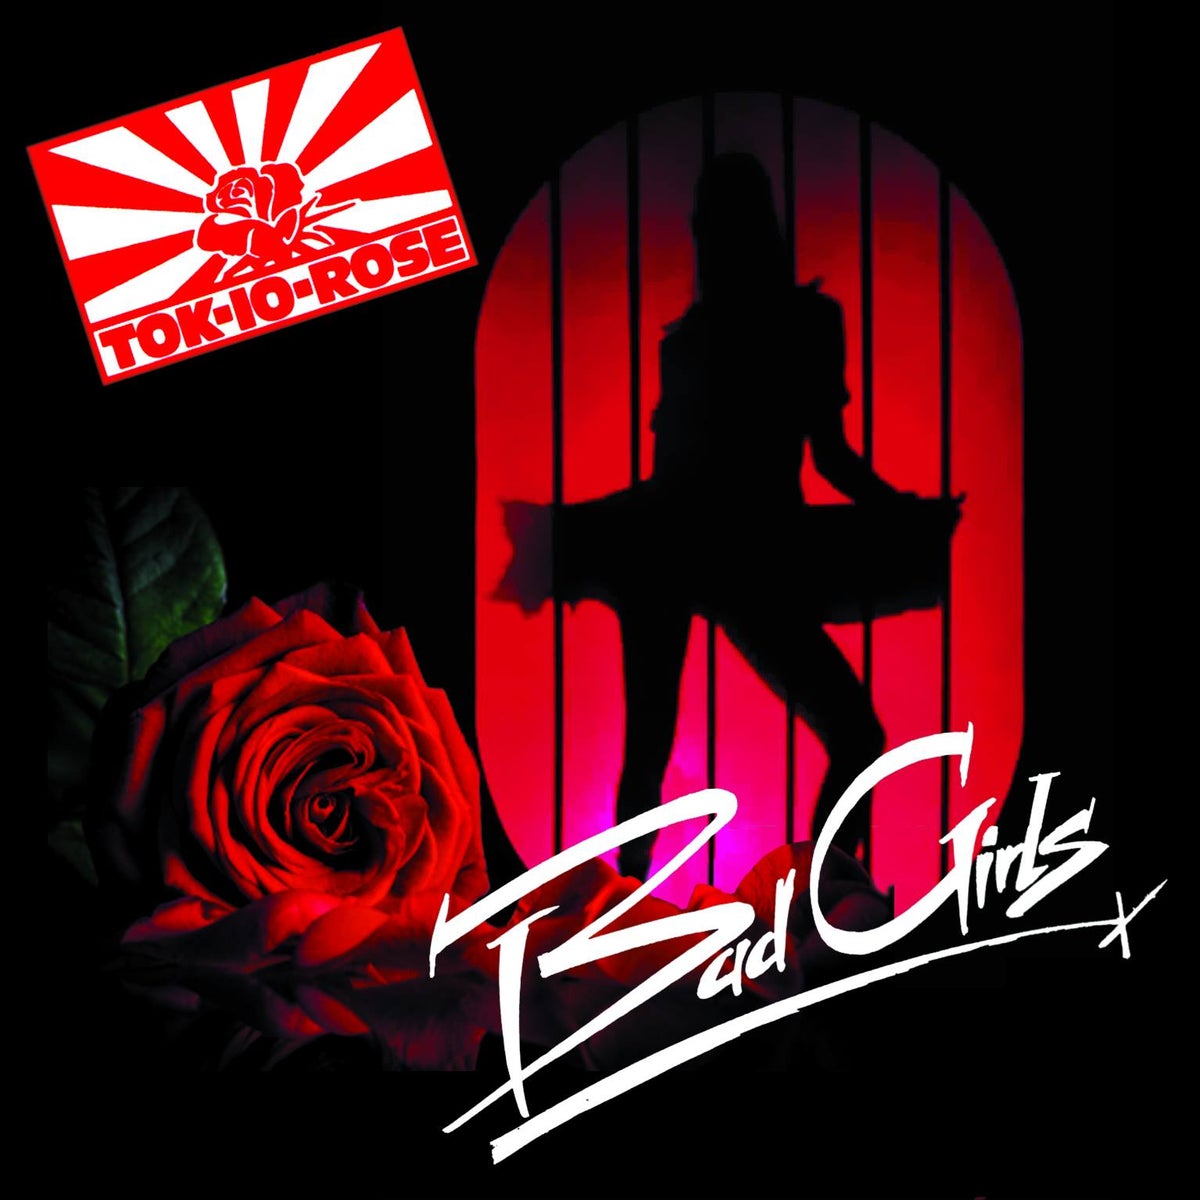 TOK-IO ROSE / Bad Girls (NWOBHM)